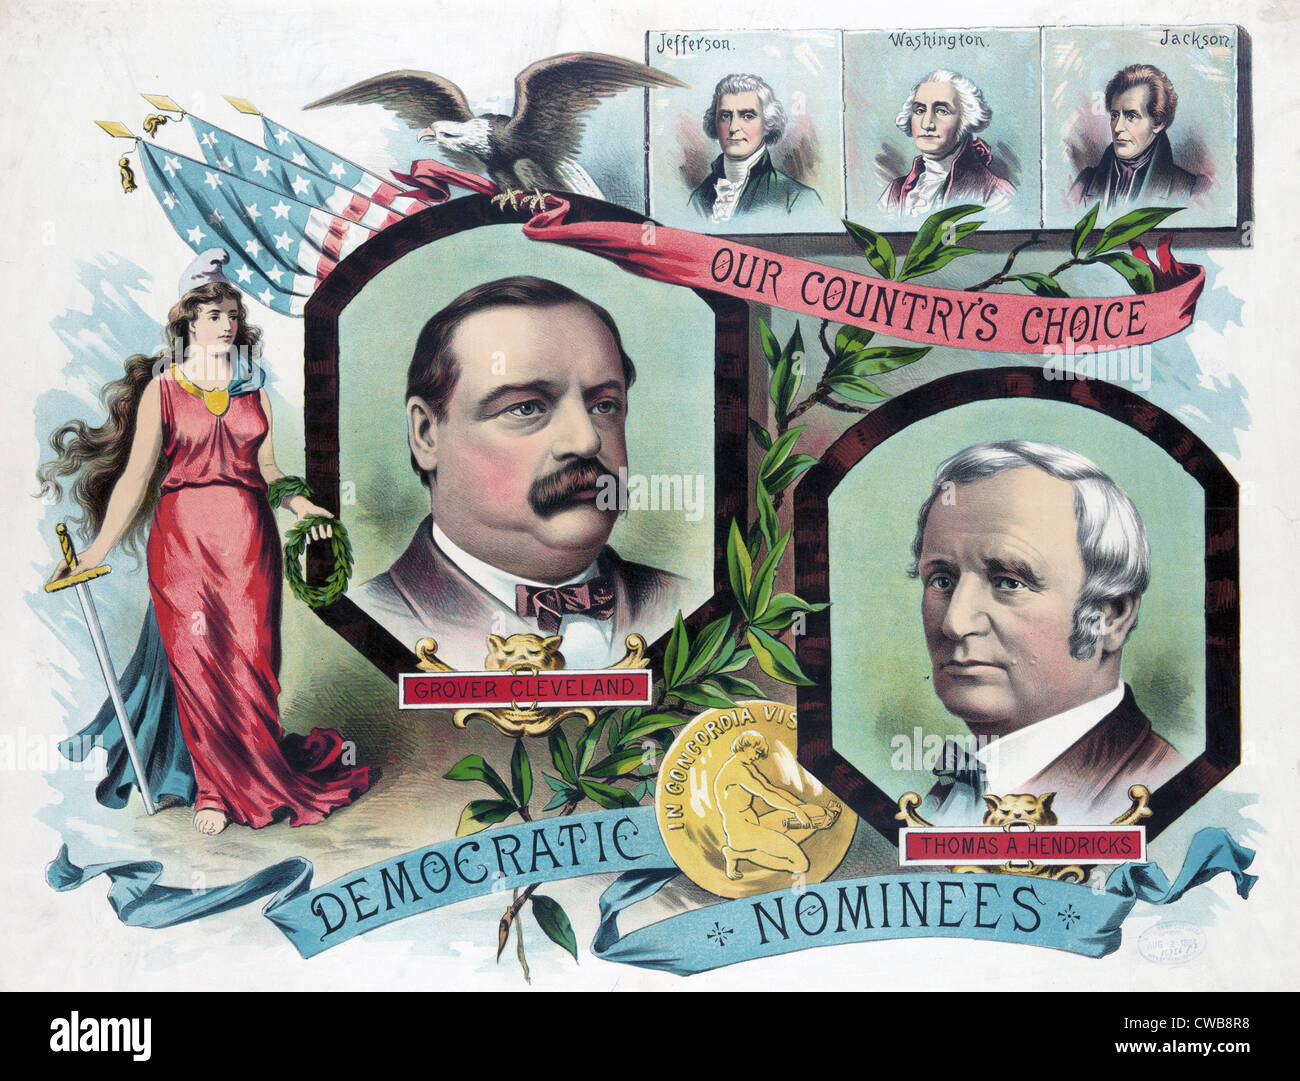 Grover Cleveland, Thomas A. Hendricks, den demokratischen Kandidaten für das Präsidentenamt im Jahr 1884 Stockfoto